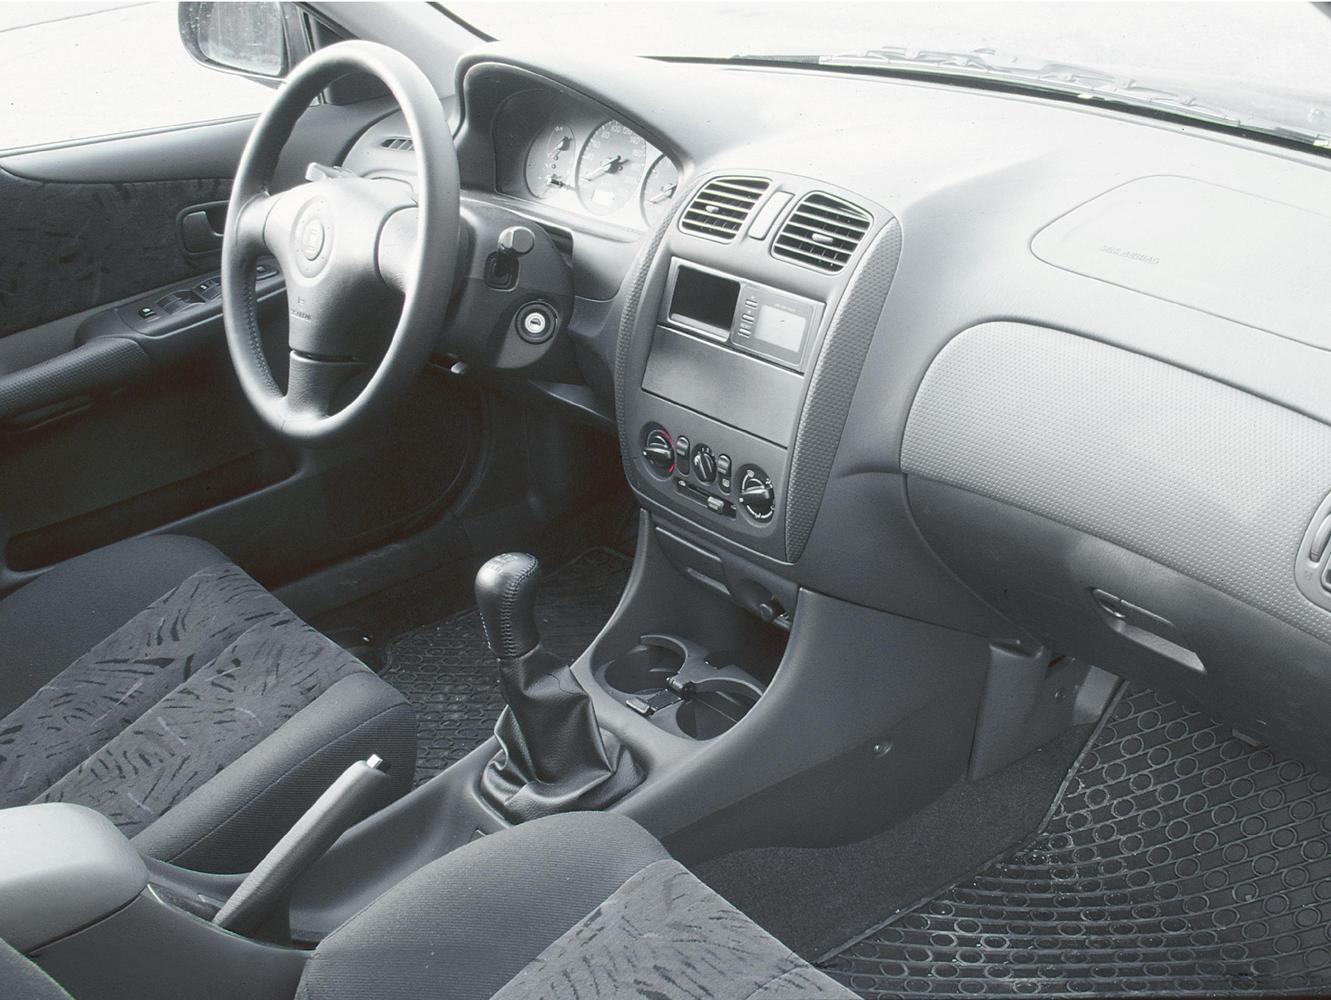 хэтчбек 5 дв. Mazda 323 1998 - 2000г выпуска модификация 1.3 MT (73 л.с.)